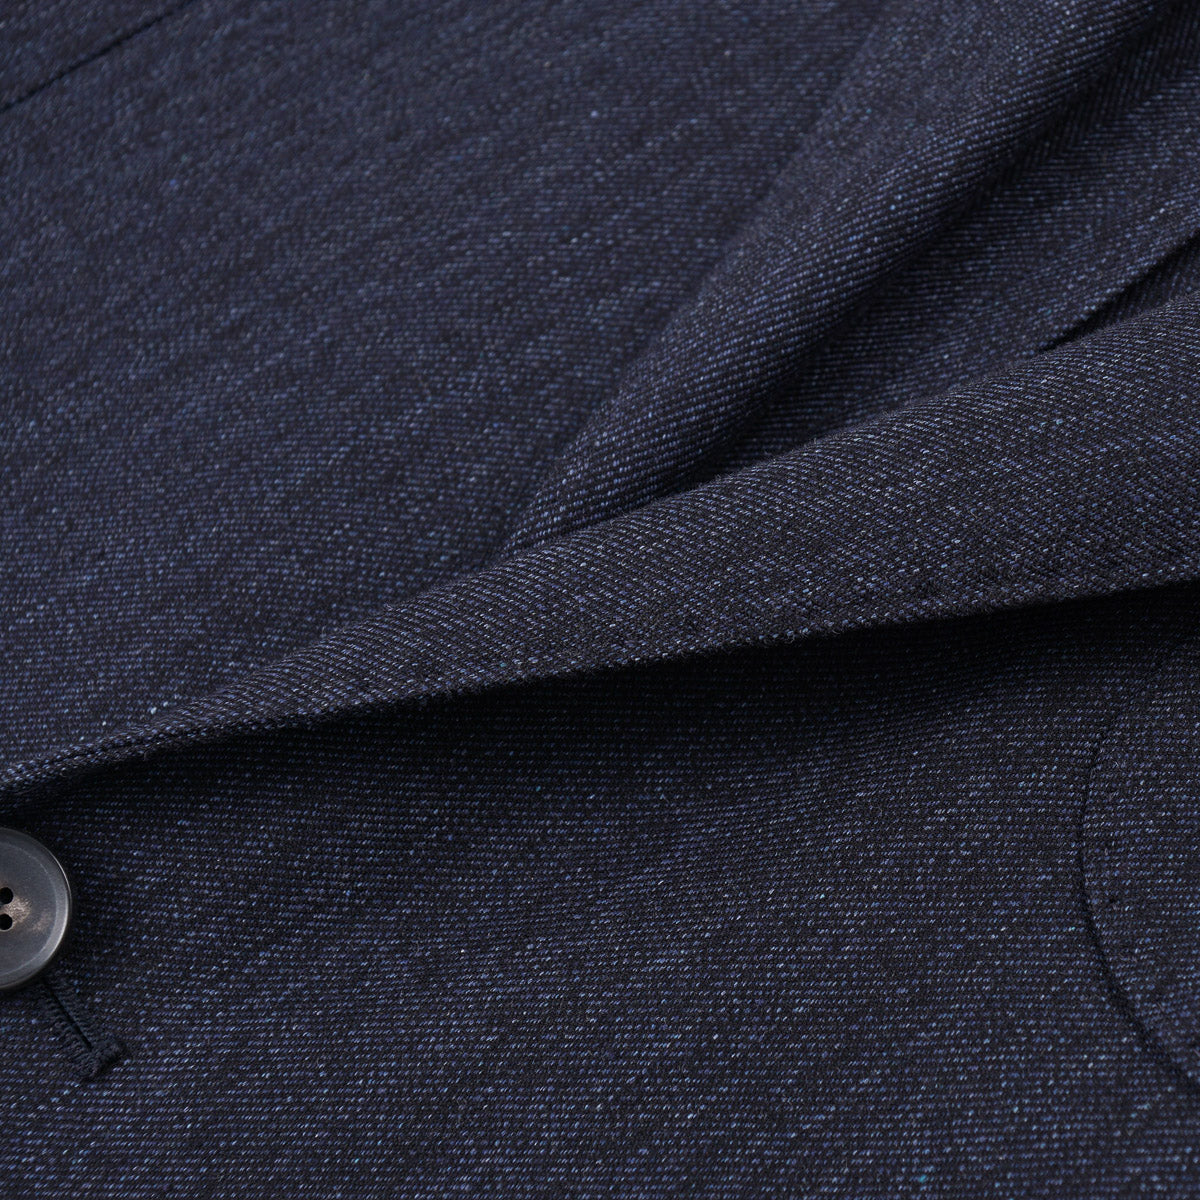 Luigi Borrelli Unlined Denim Cotton Suit - Top Shelf Apparel